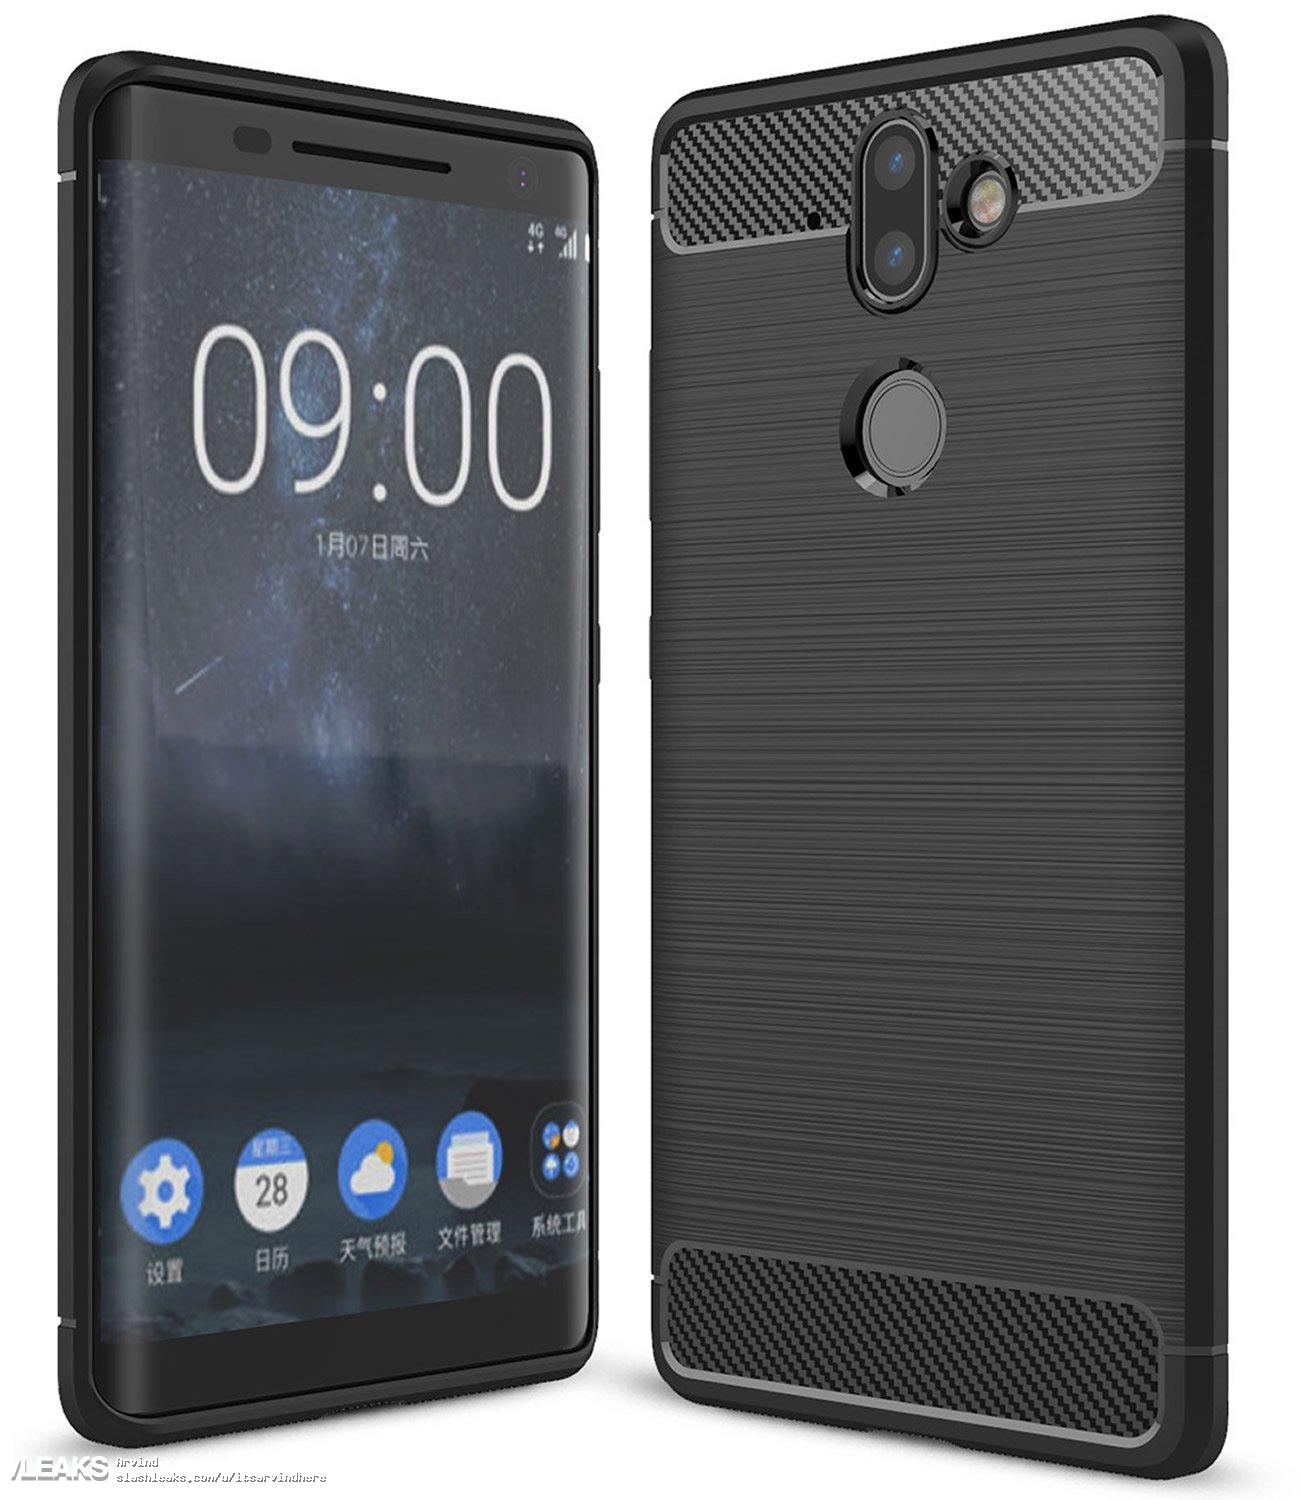 Nokia 9 design